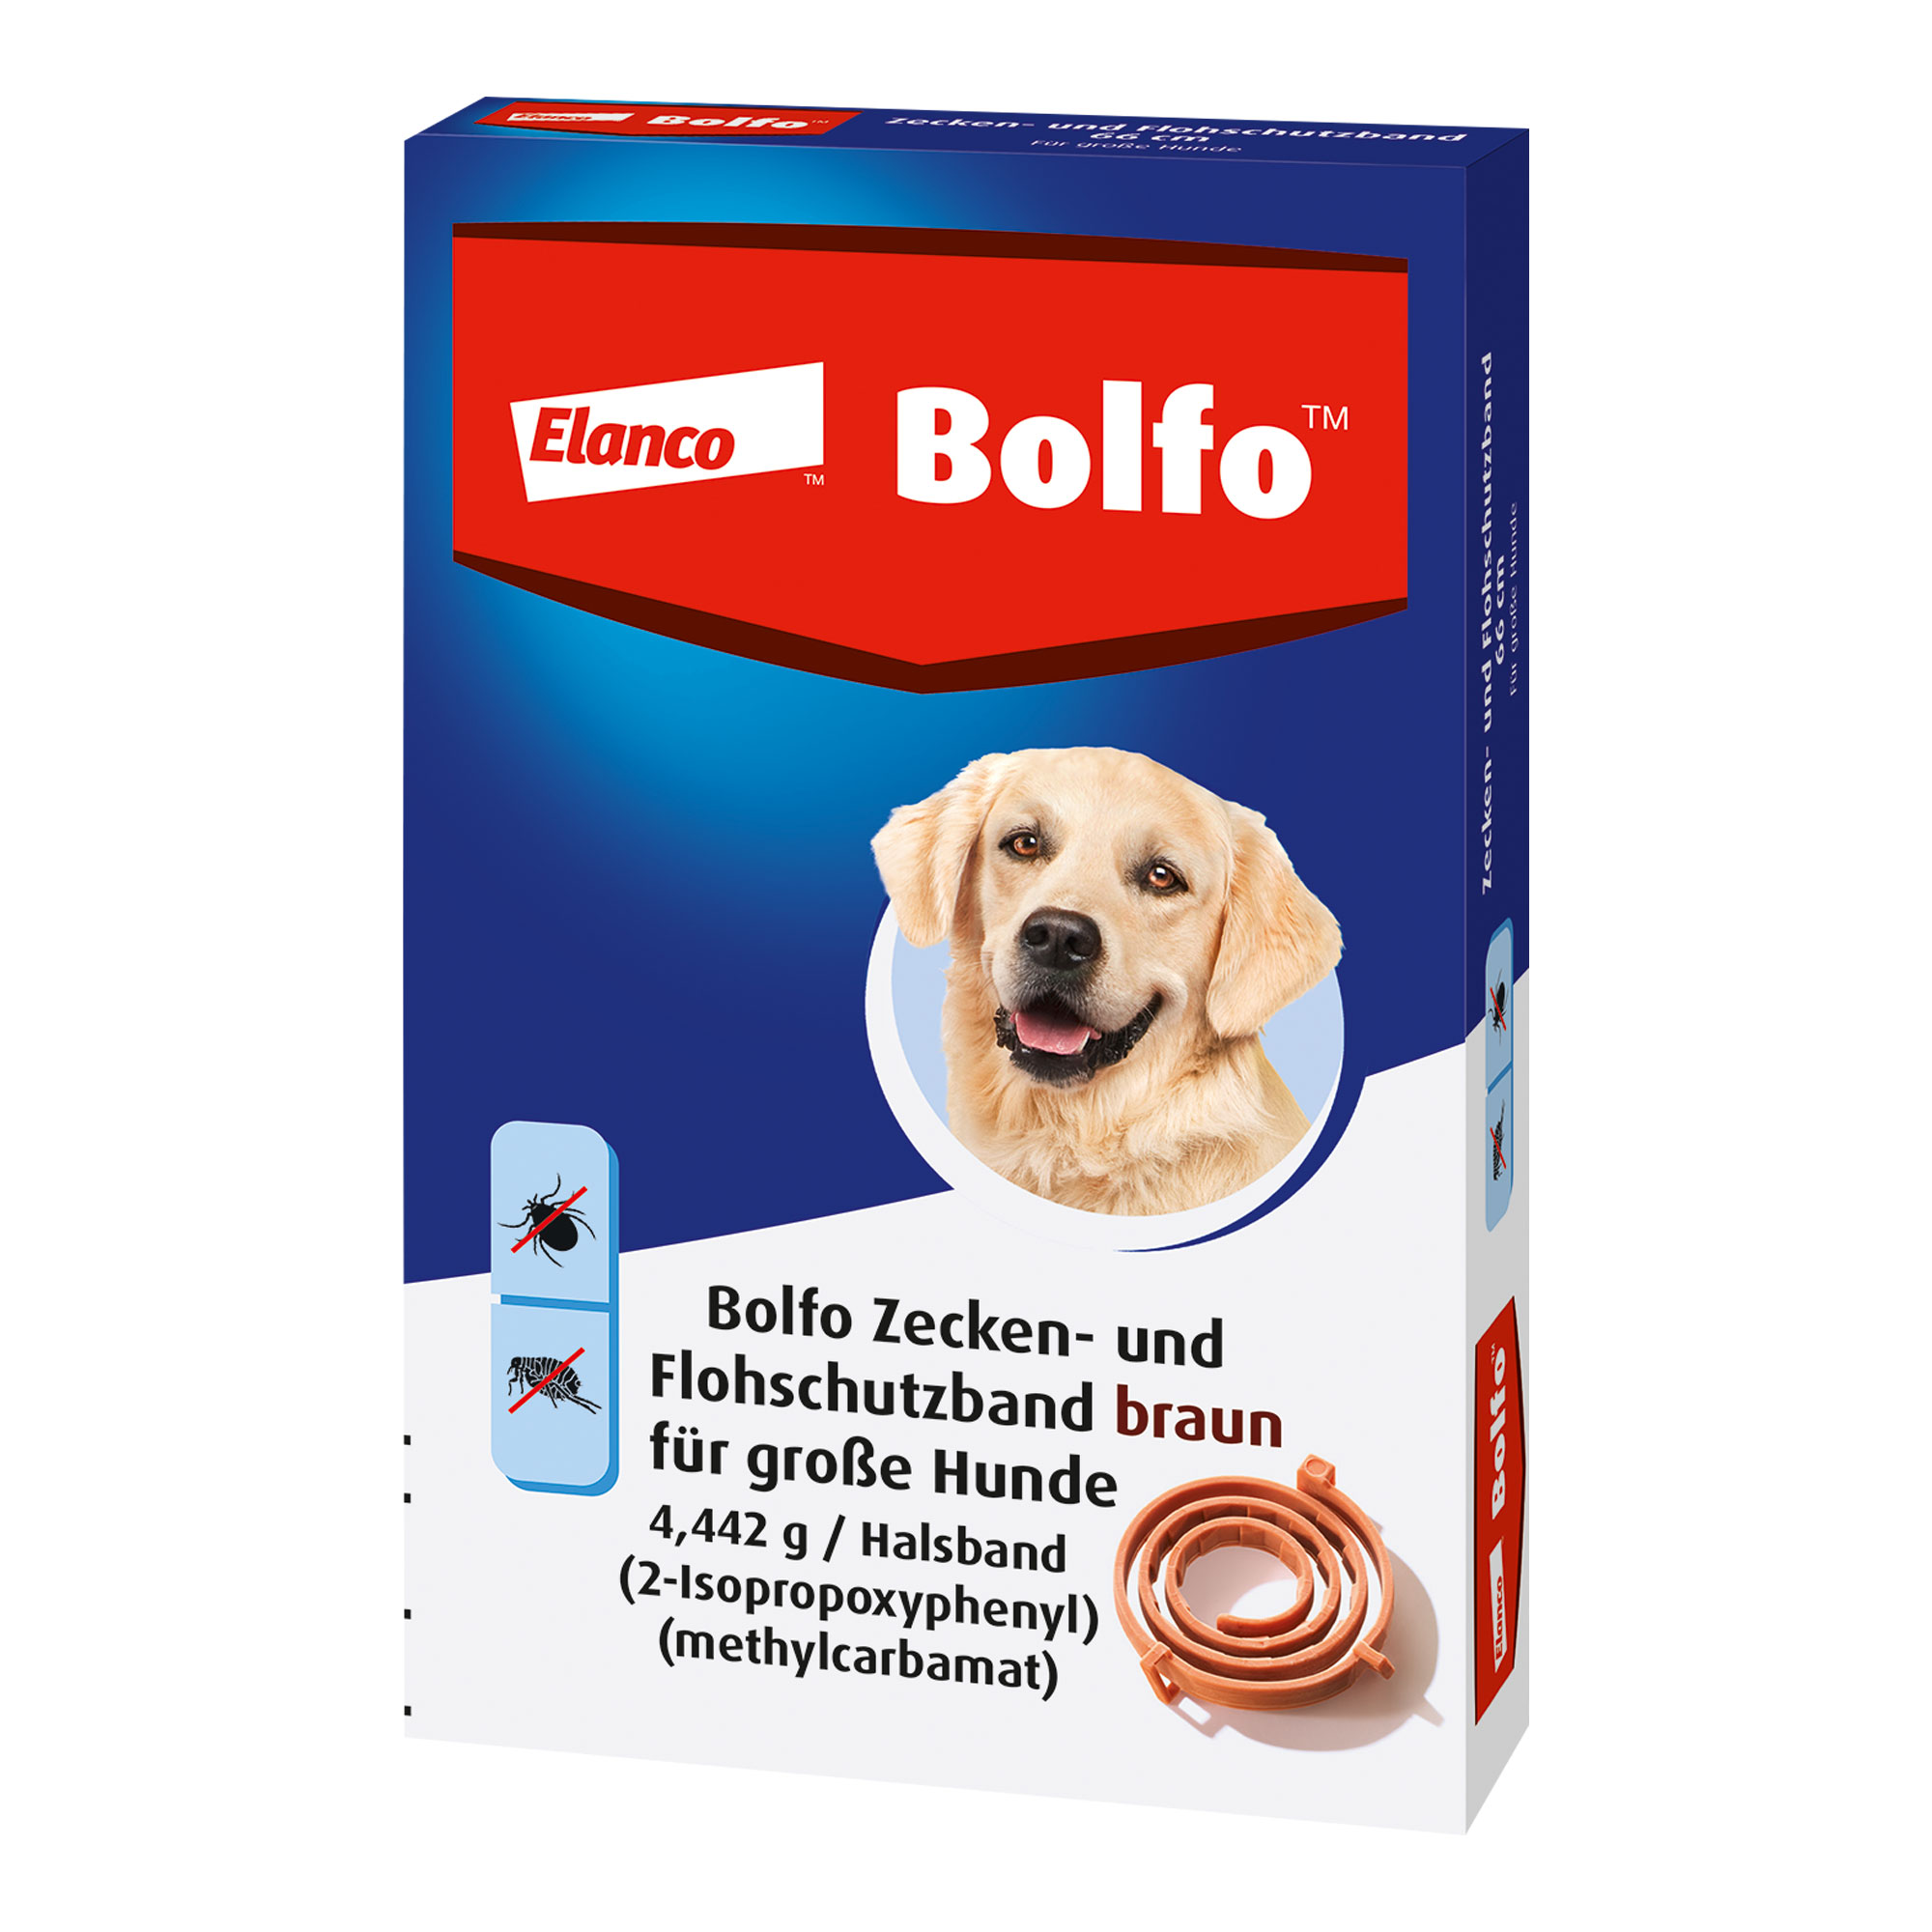 Flohschutzband für große Hunde. Farbe: braun. Länge: 66 cm (45 g).